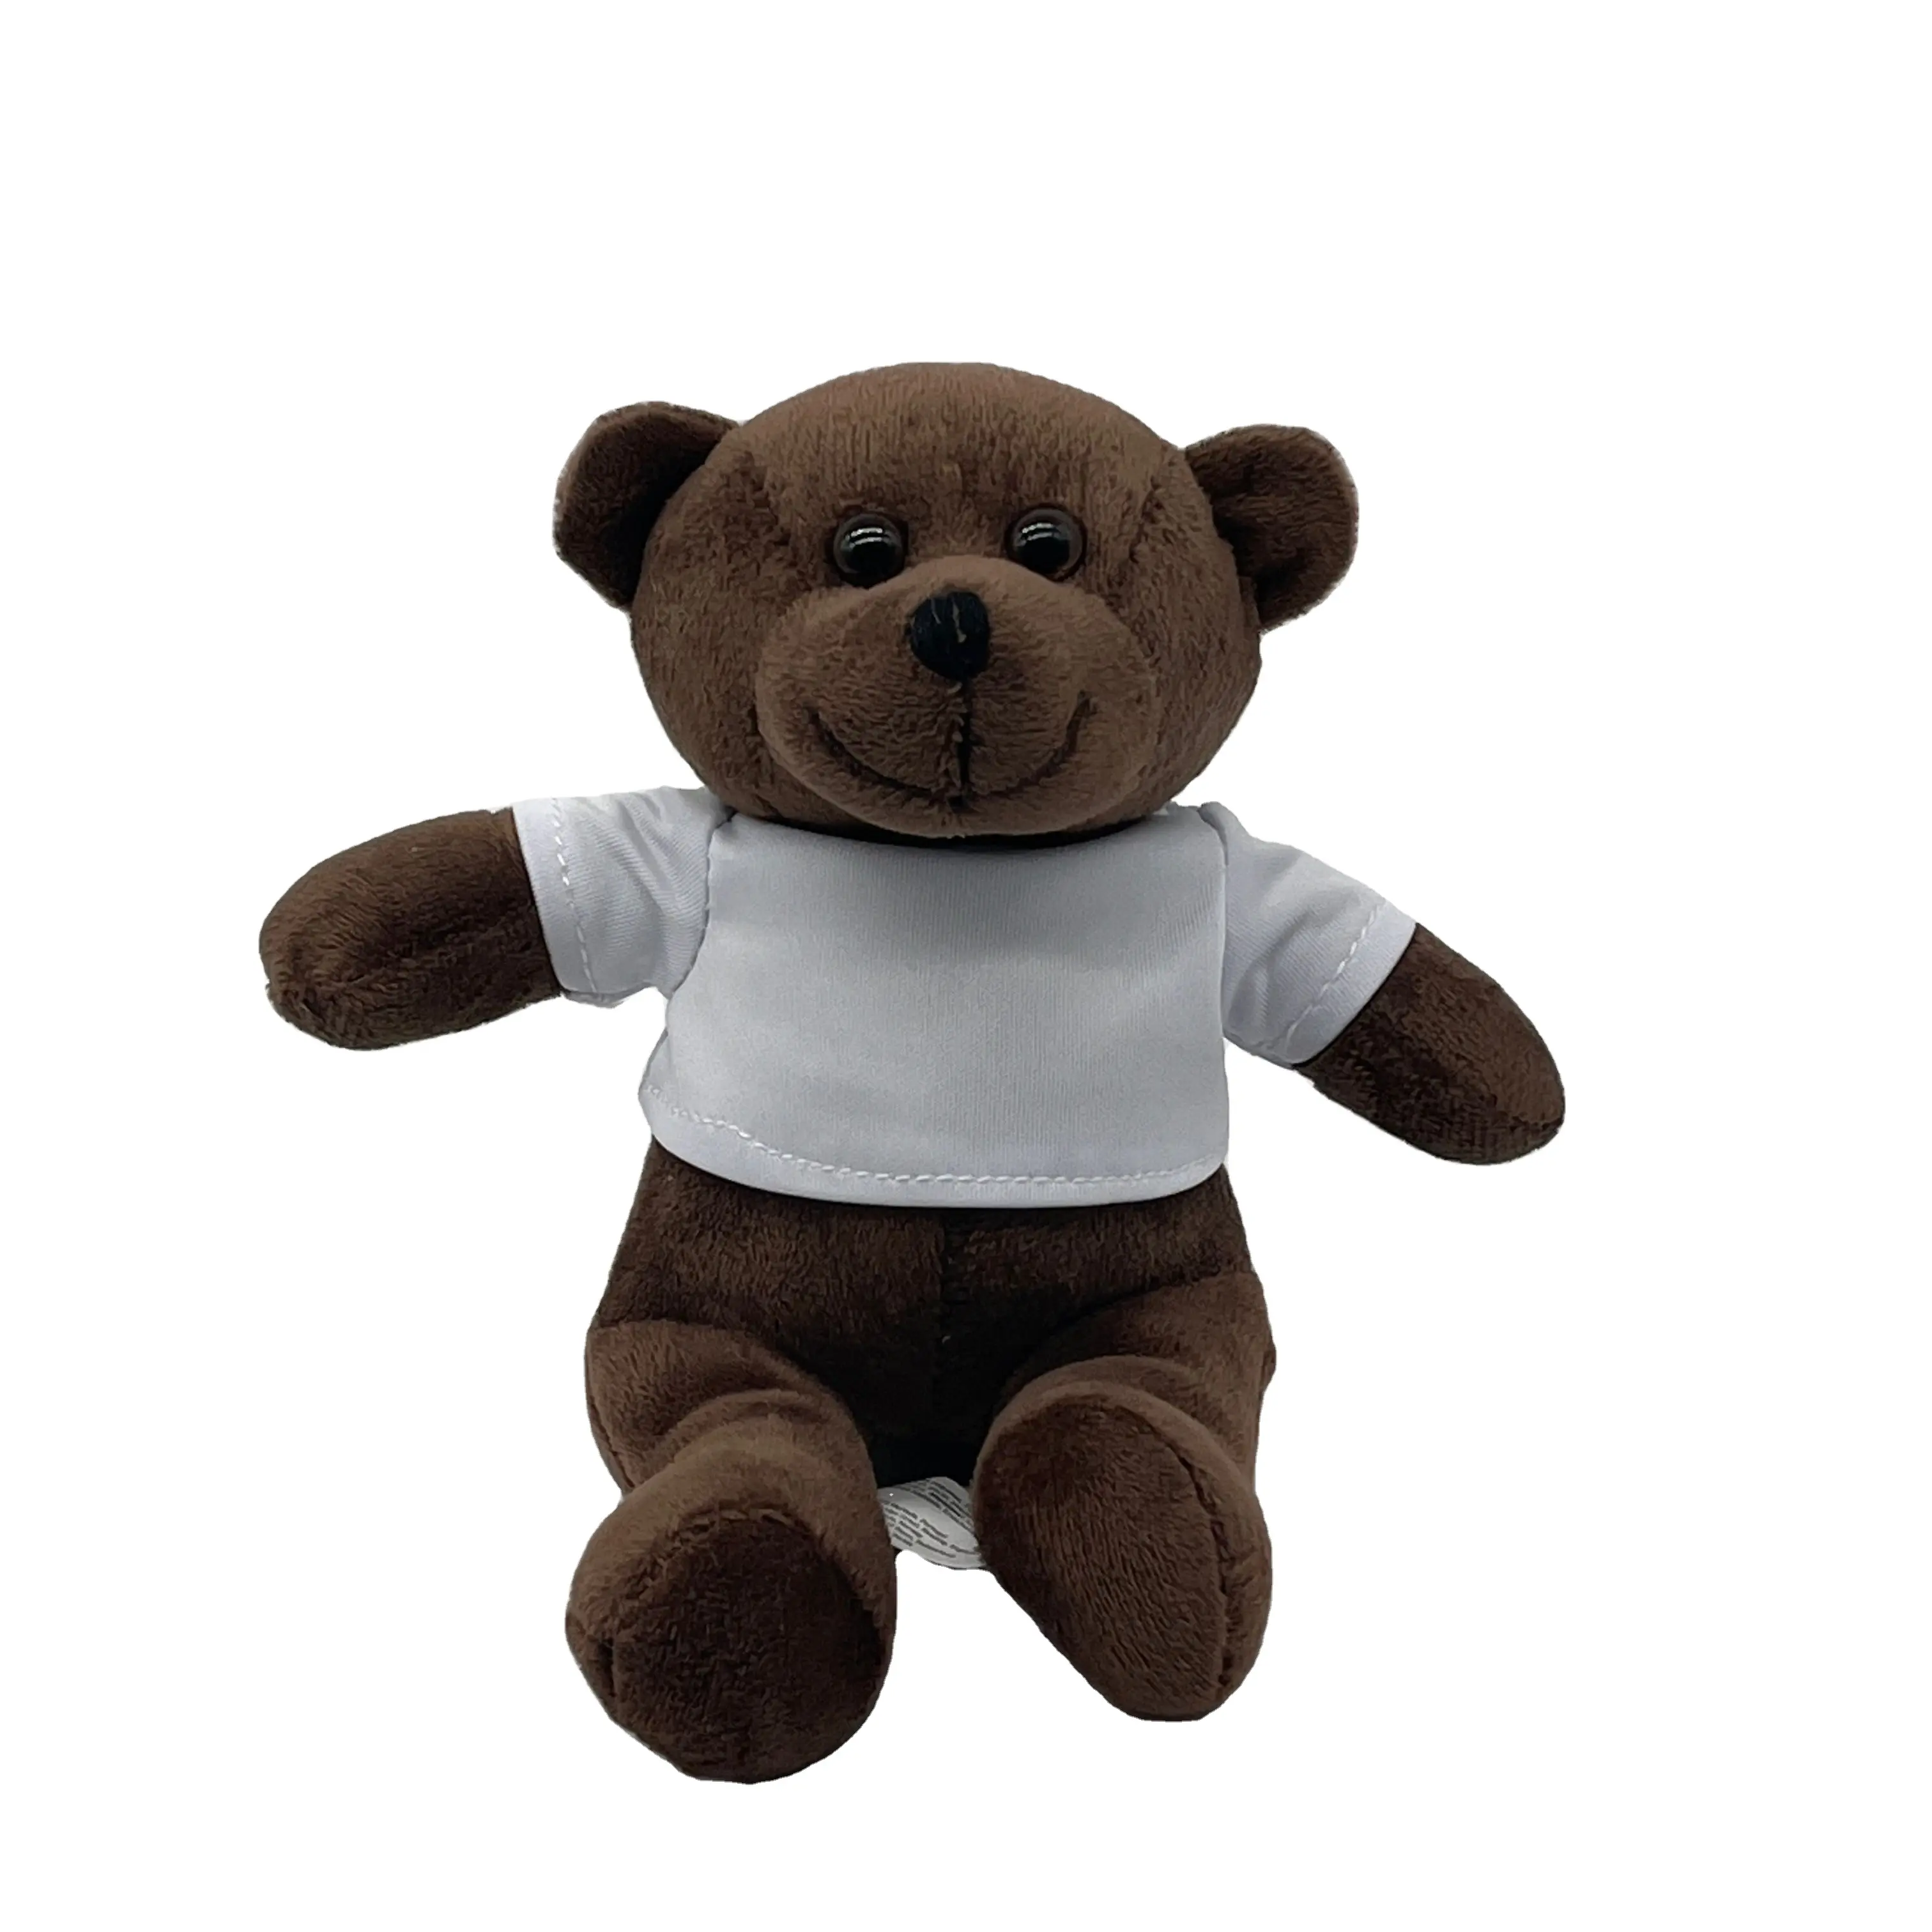 custom logo in t shirt Plush teddy bear toys Promotional gidt